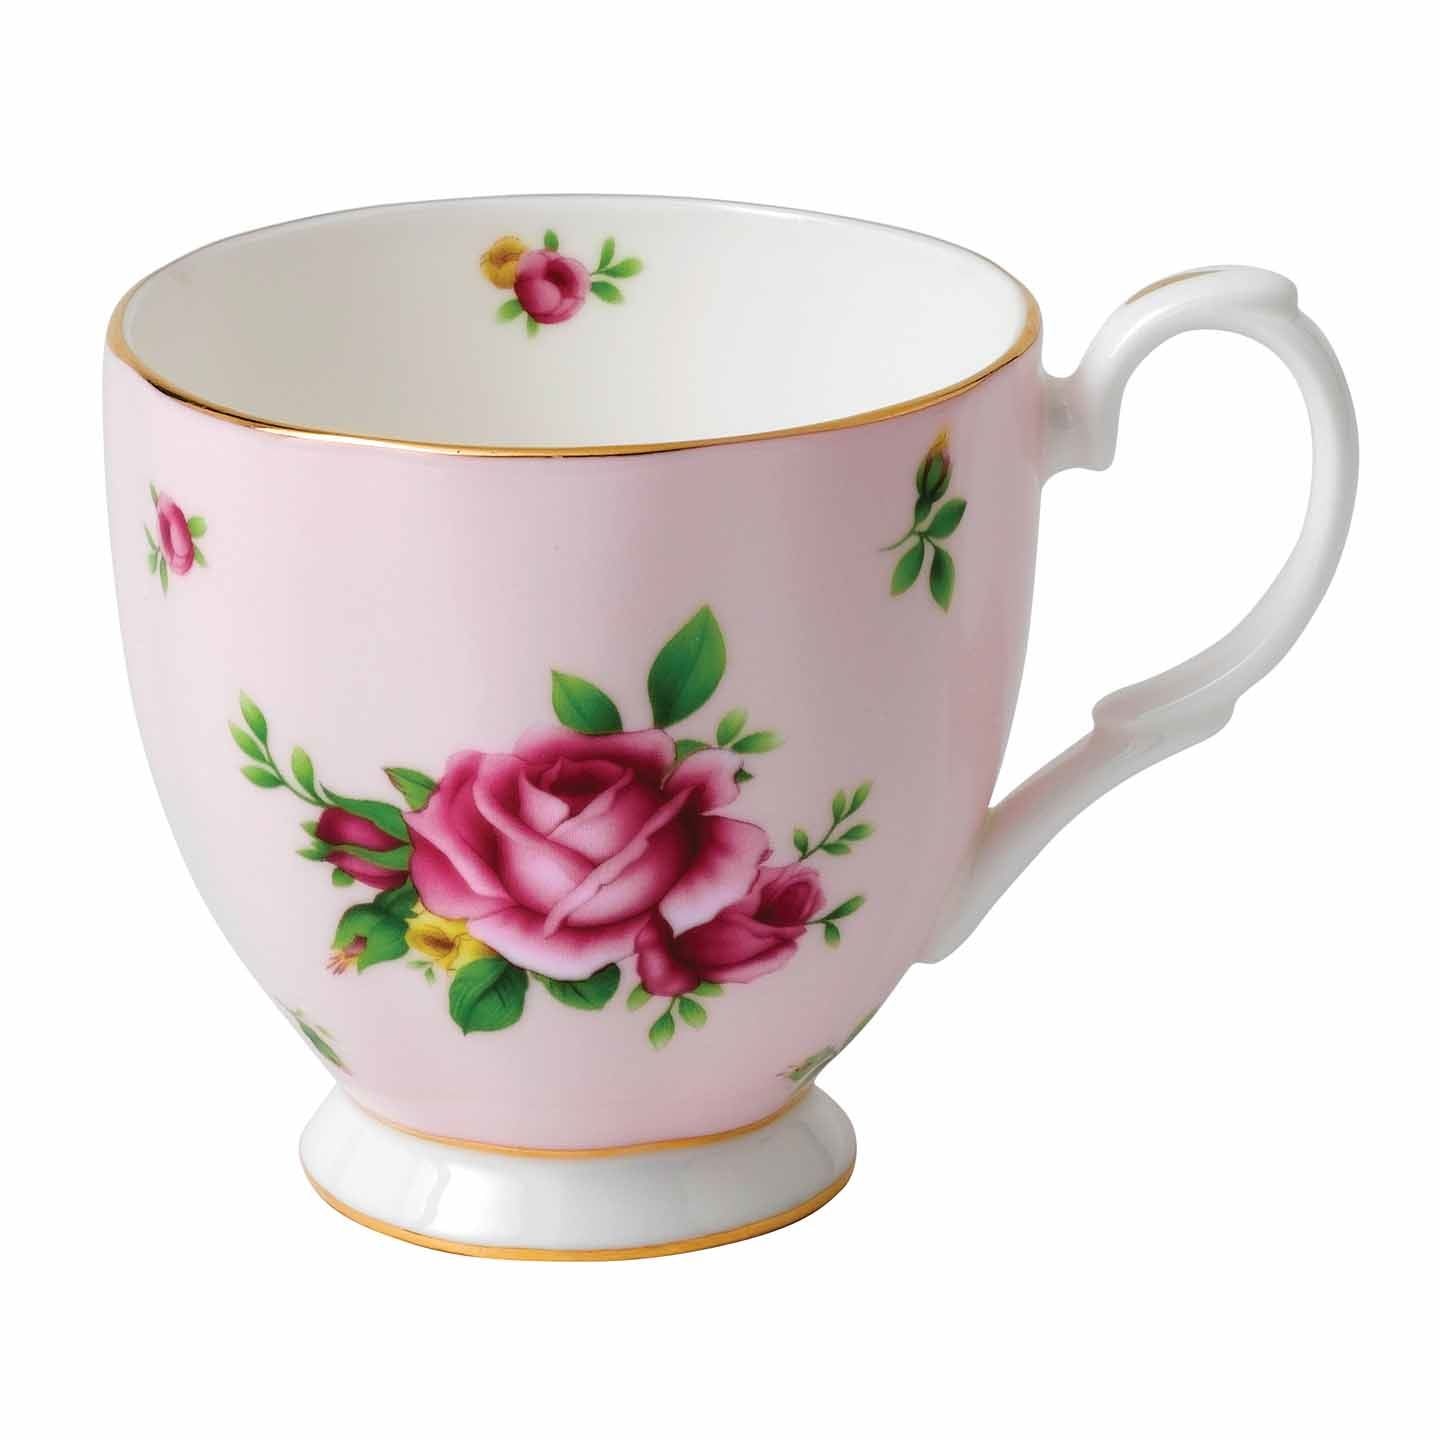 Royal Albert New Country Roses Pink Mug